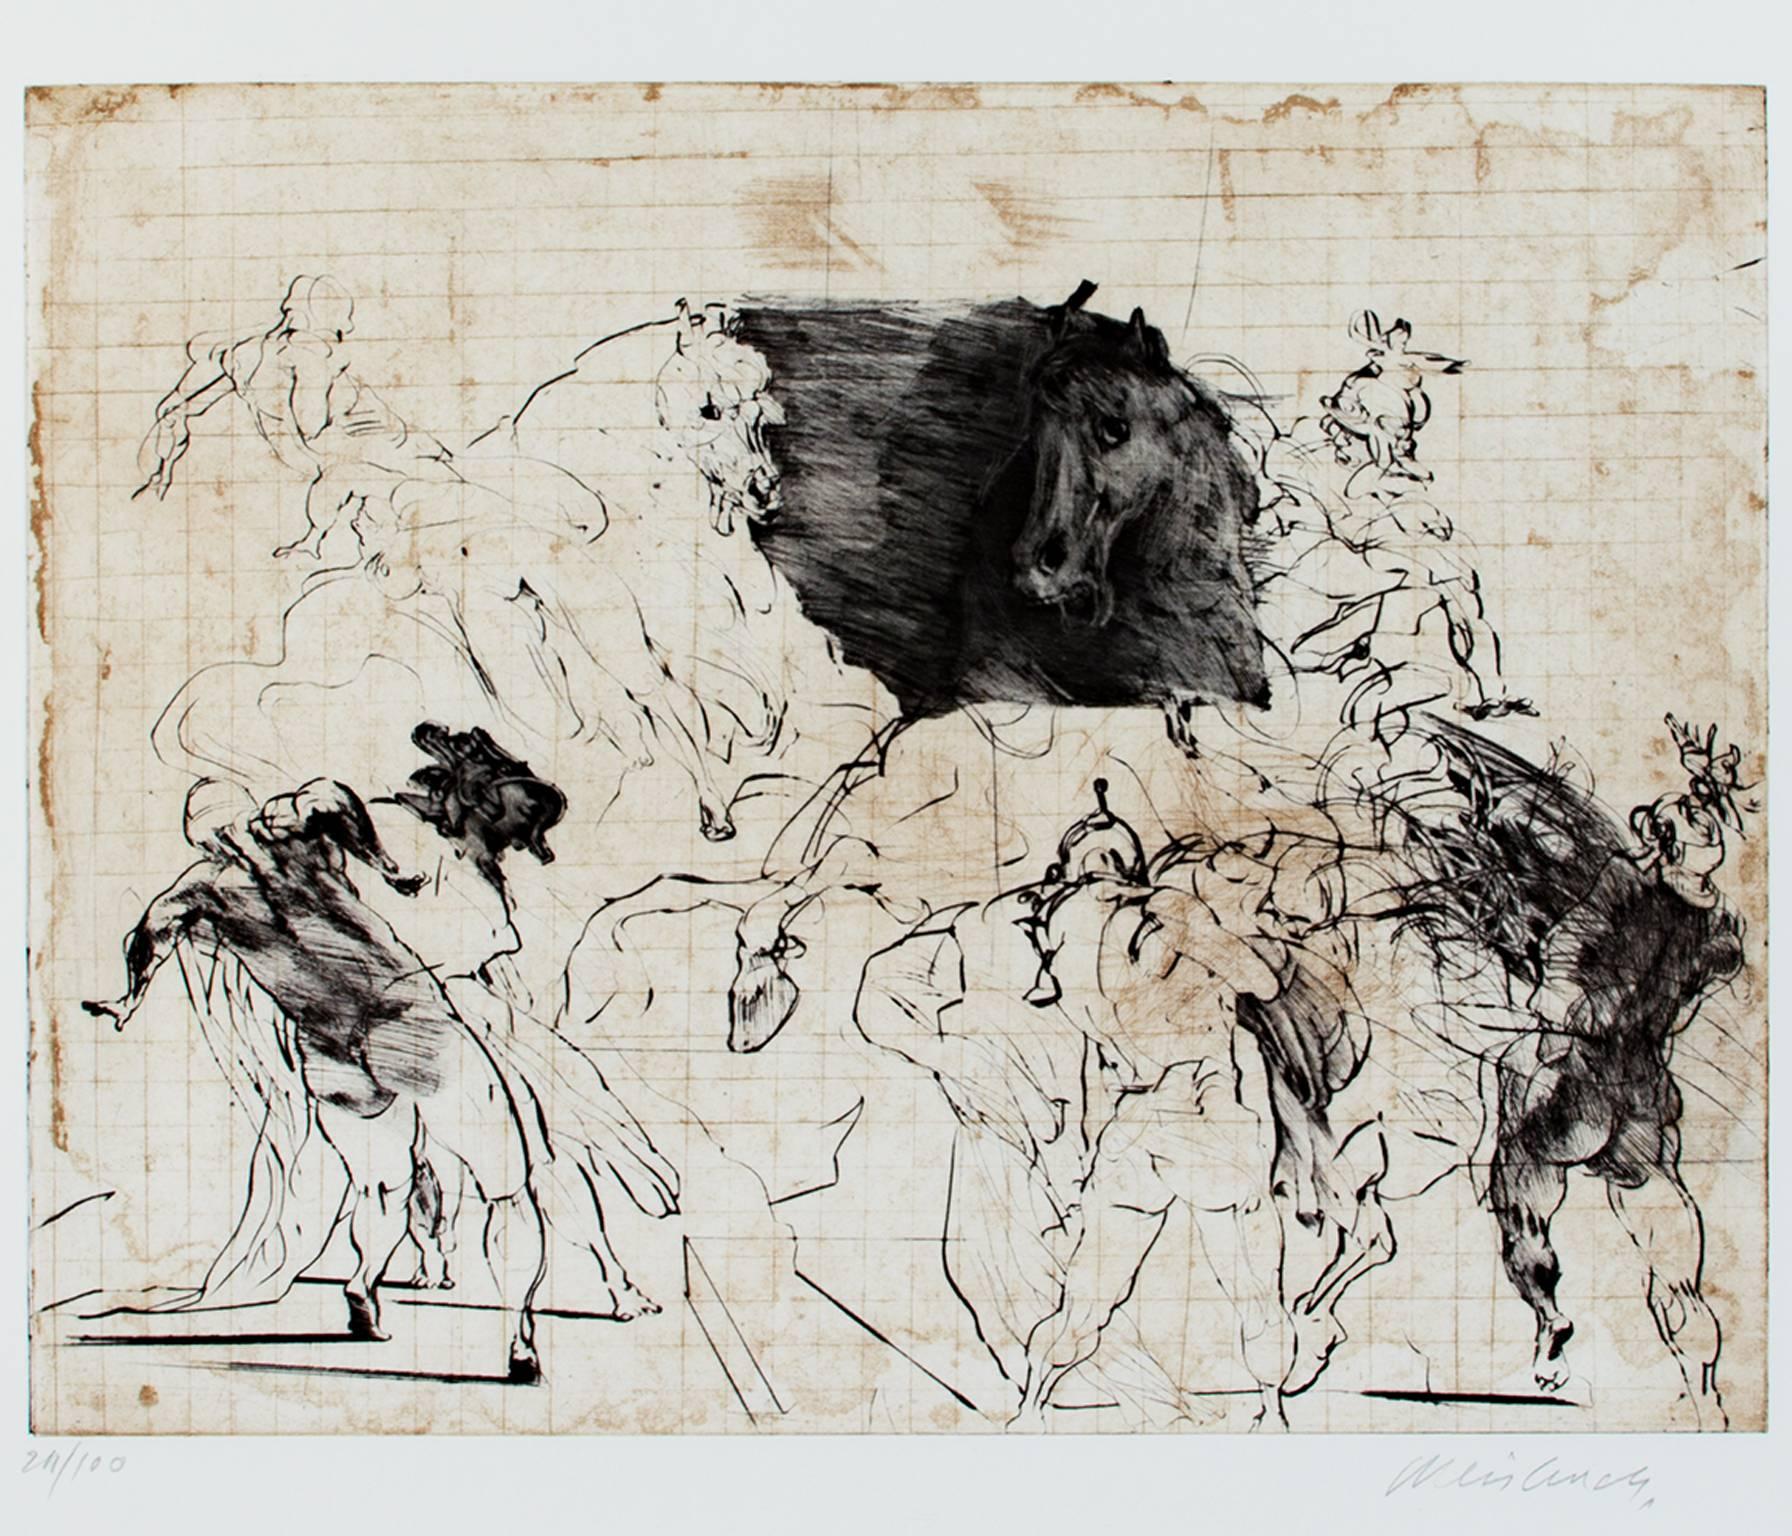 "Combat Equestre" ist eine Original-Lithographie von Claude Weisbuch. Der Künstler hat das Werk rechts unten signiert und links unten die Nummer der Auflage (24/100) angegeben. Dieses Stück stellt mehrere Figuren und Pferde in einer Schlacht dar.